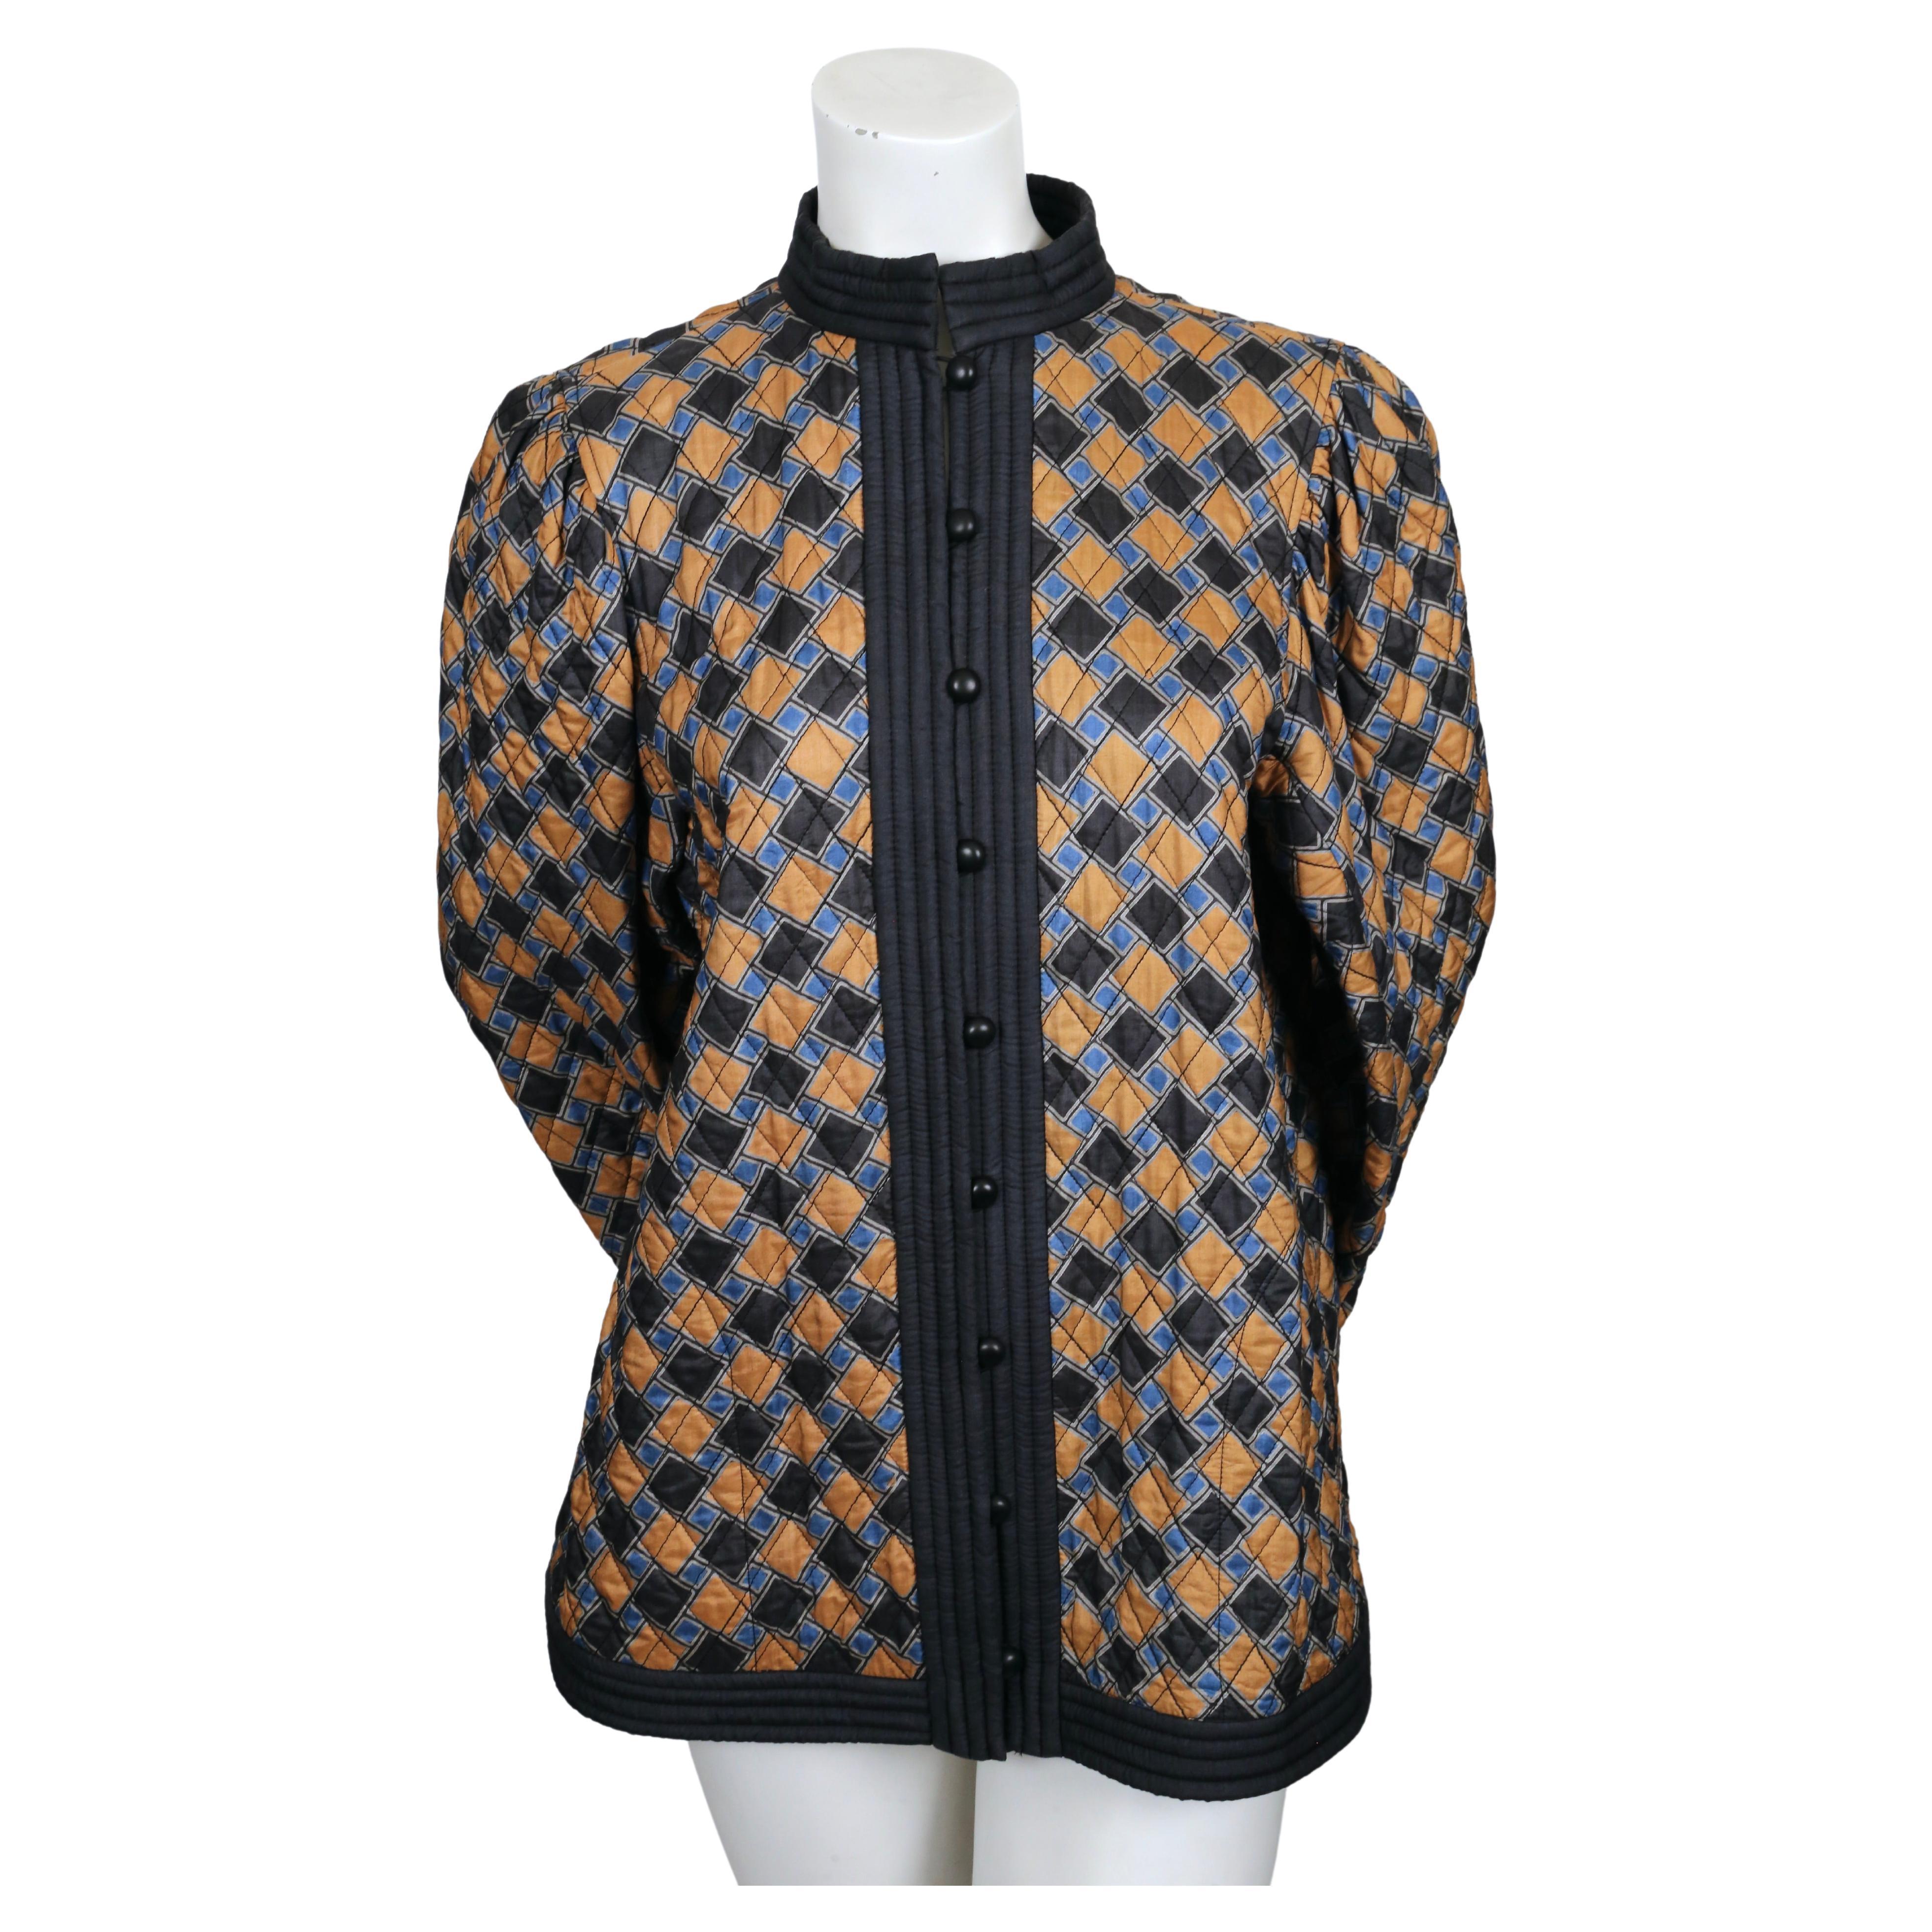 Sehr seltene, abstrakt bedruckte, gesteppte Seidenjacke von Yves Saint Laurent aus dem Jahr 1979. Die Jacke ist mit FR 36 gekennzeichnet, kann aber aufgrund des weiten Schnitts auch einer französischen 38 (US 2-6) passen. Die Farben sind Blau und